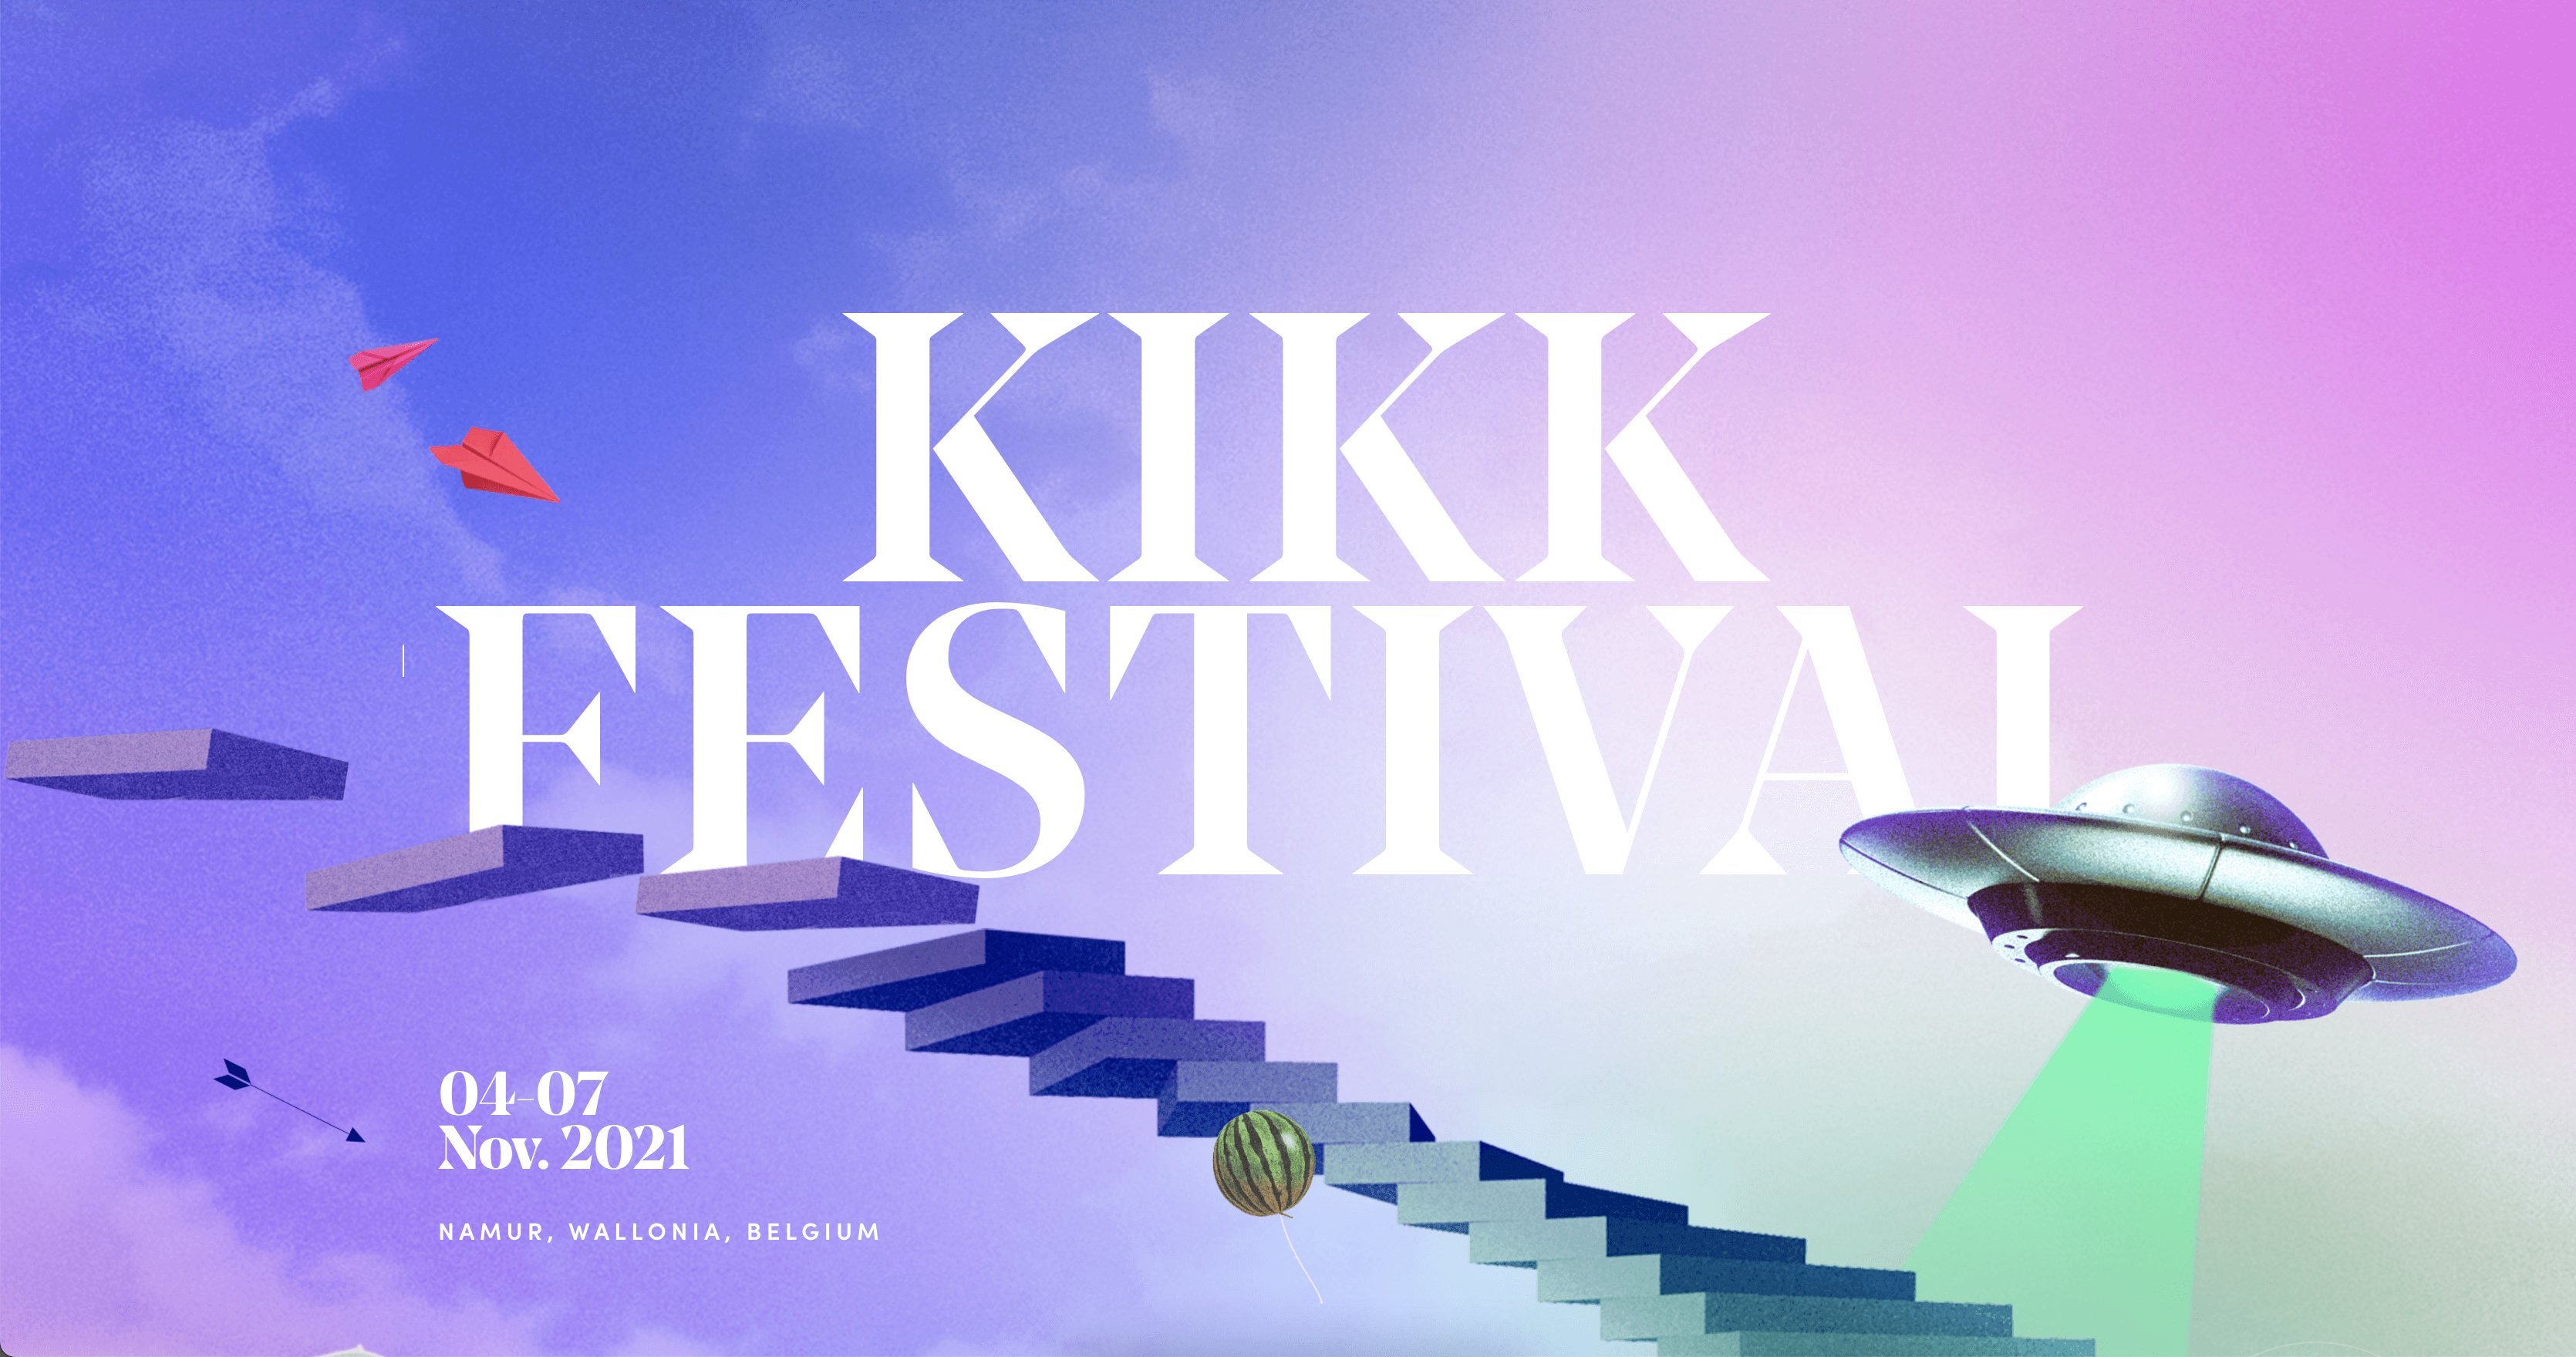 KIKK Festival 2021